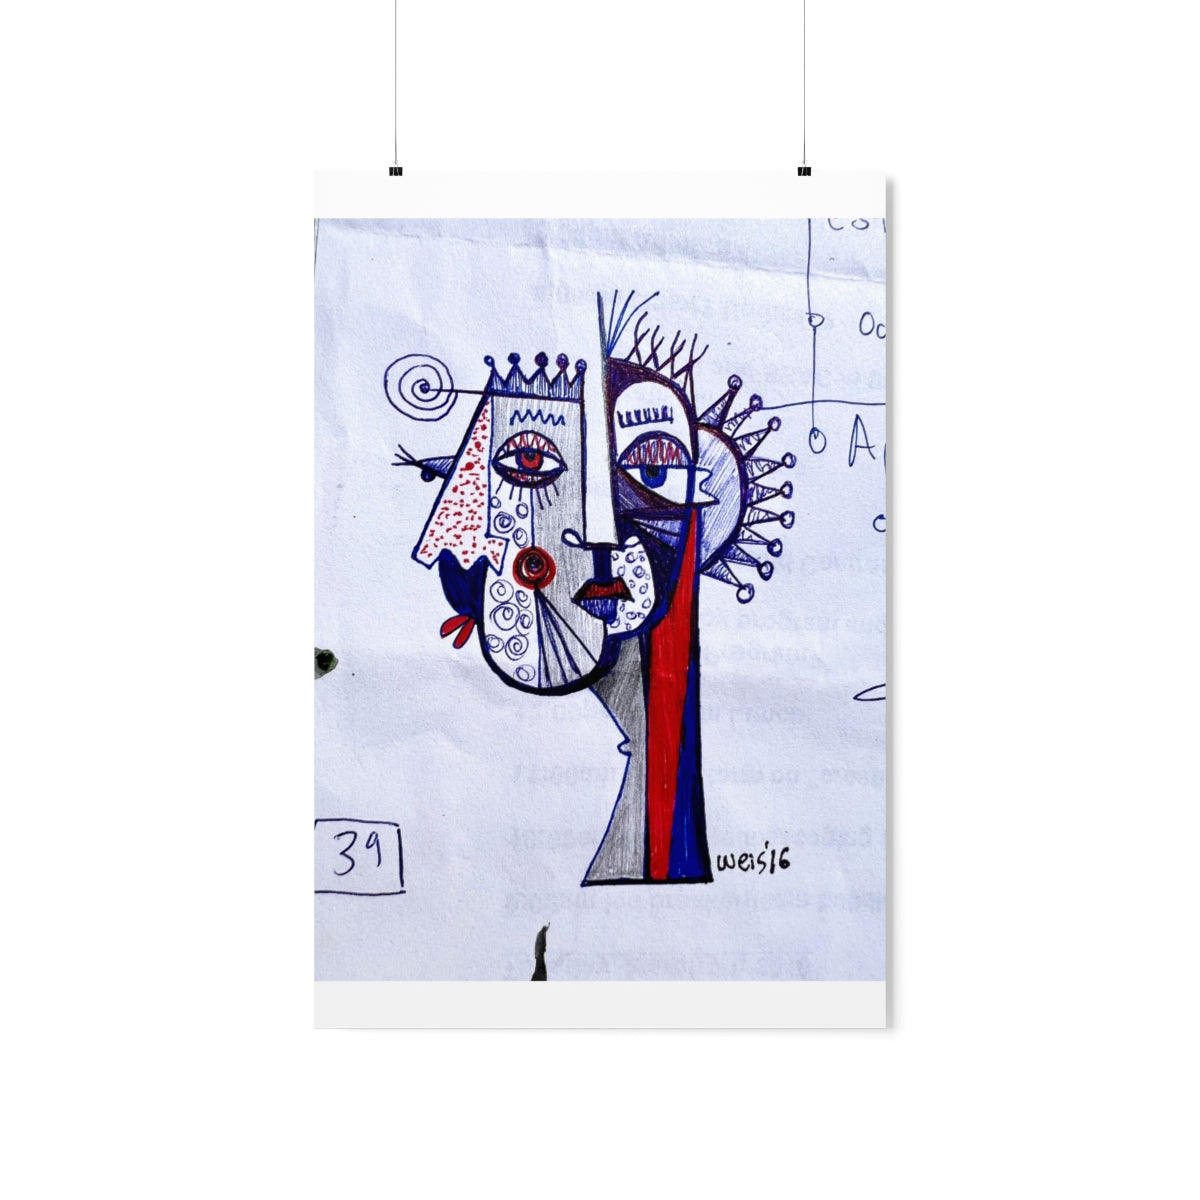 Conscious Lines #064 - Premium Matte Art Print